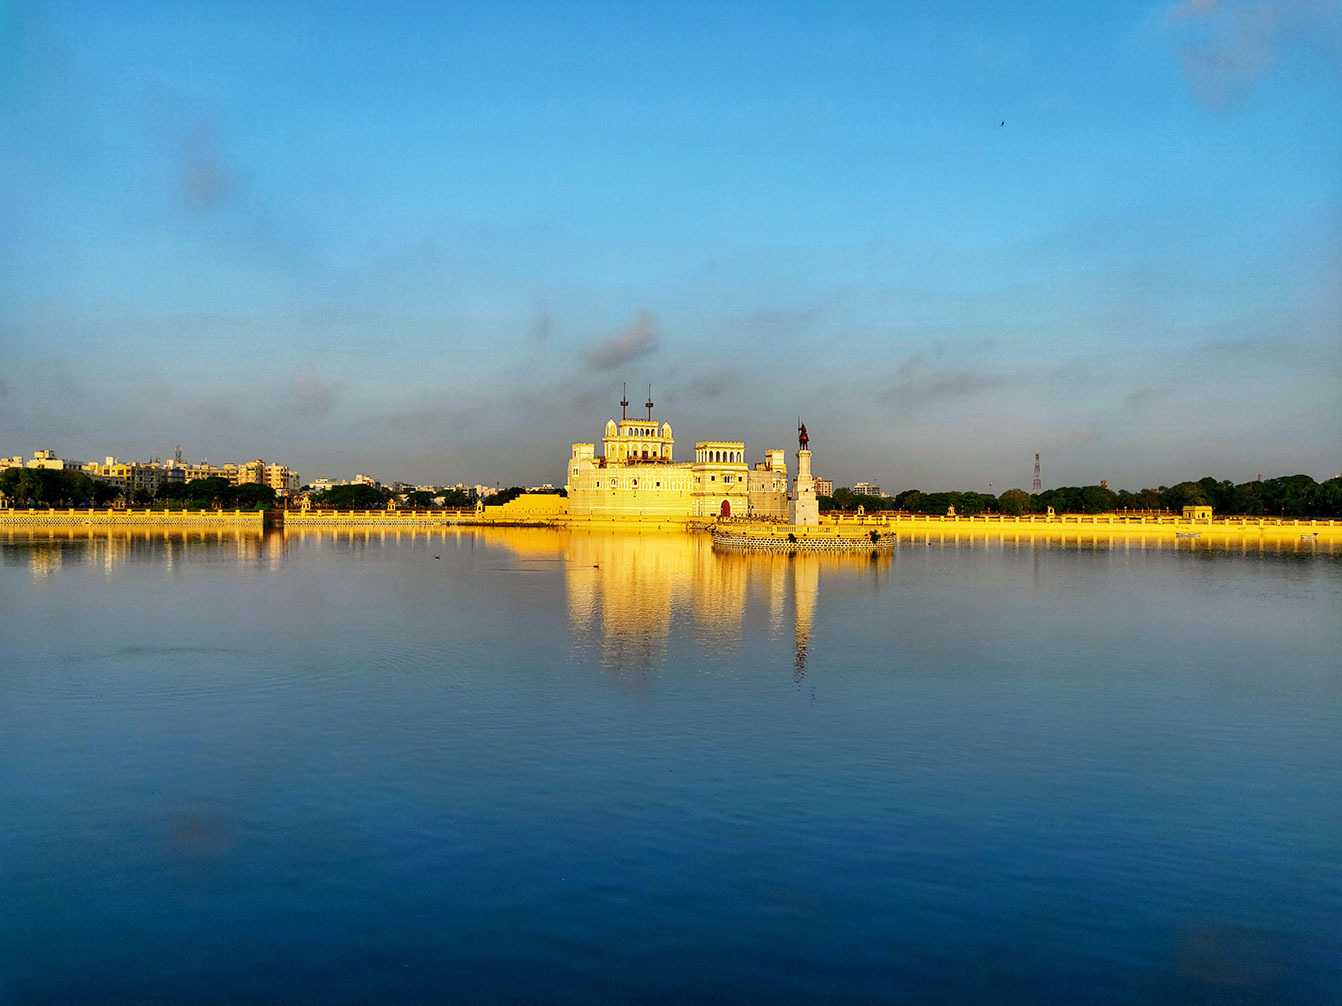 The stunning view of Lakhota Palace at Lakhota Lake